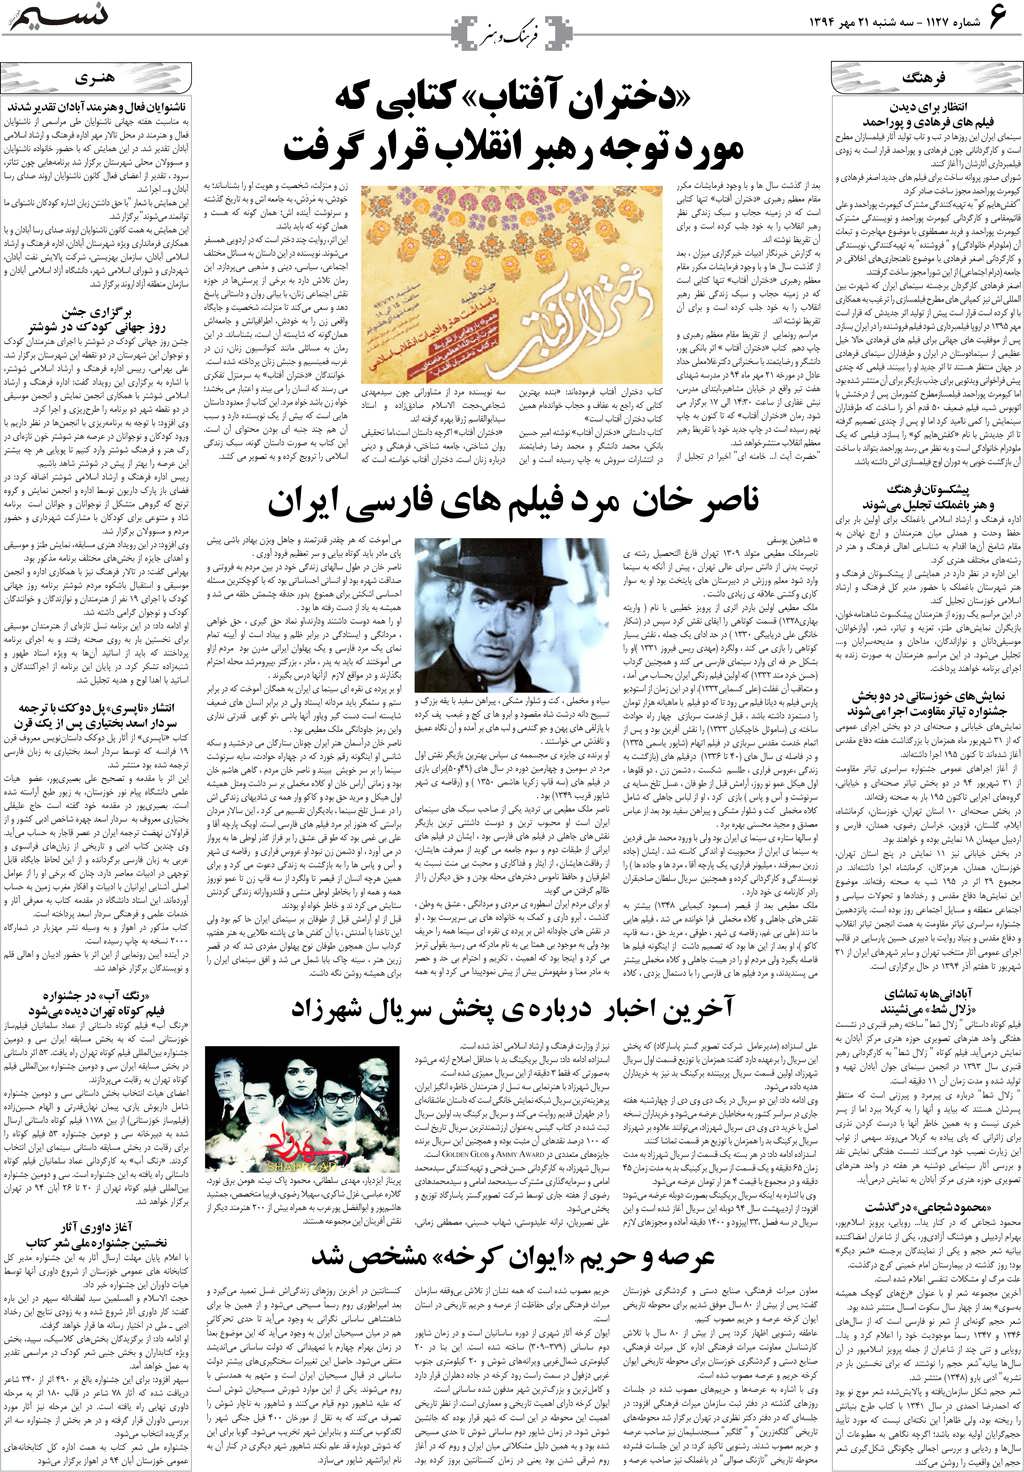 صفحه فرهنگ و هنر روزنامه نسیم شماره 1127